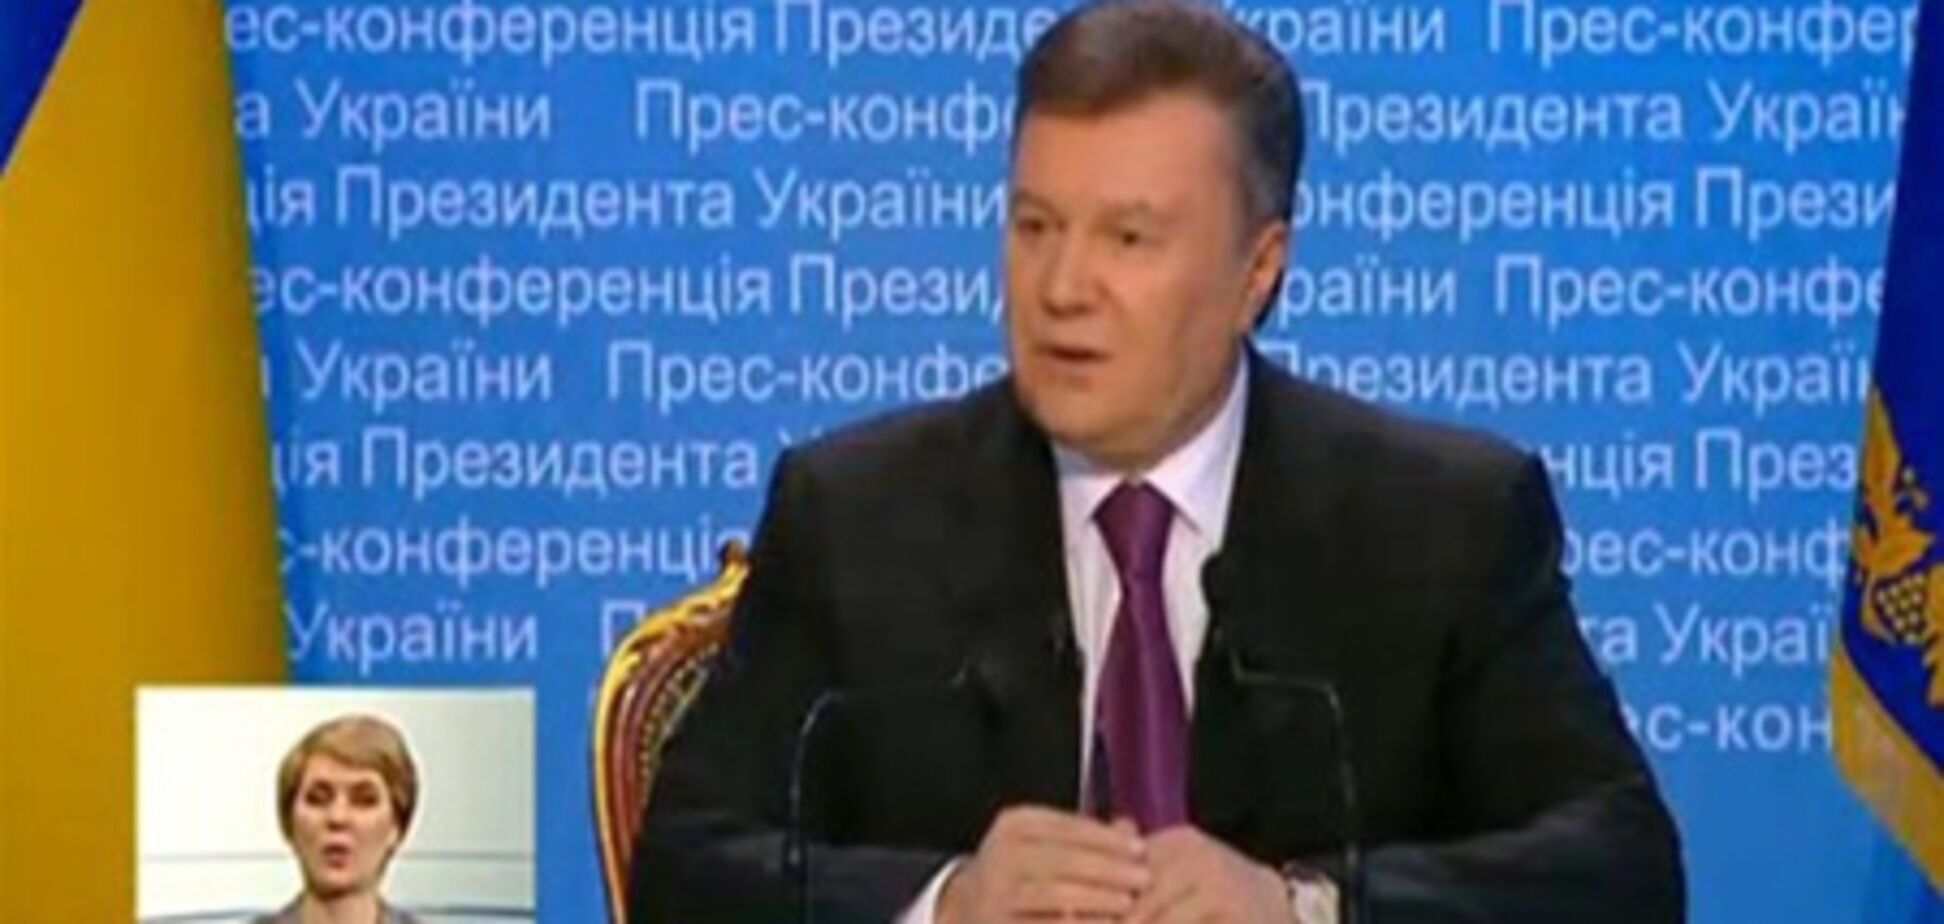 Янукович о Тимошенко: ей надо думать, как вернуть долг. Видео